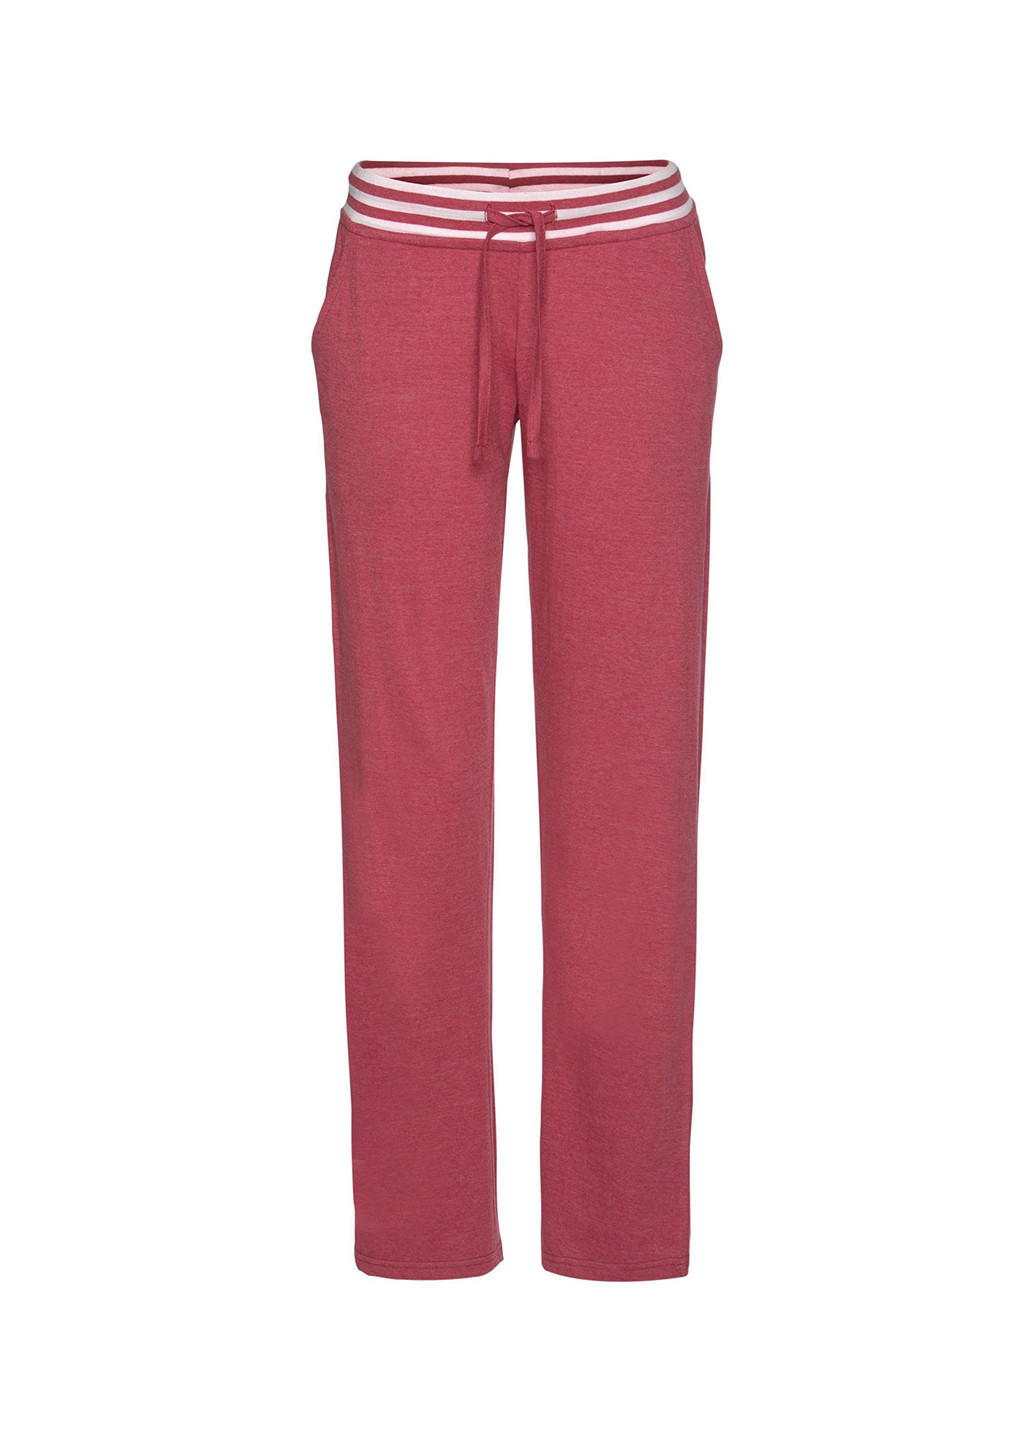 Розовая всесезон пижама (лонгслив, брюки) лонгслив + брюки Arizona